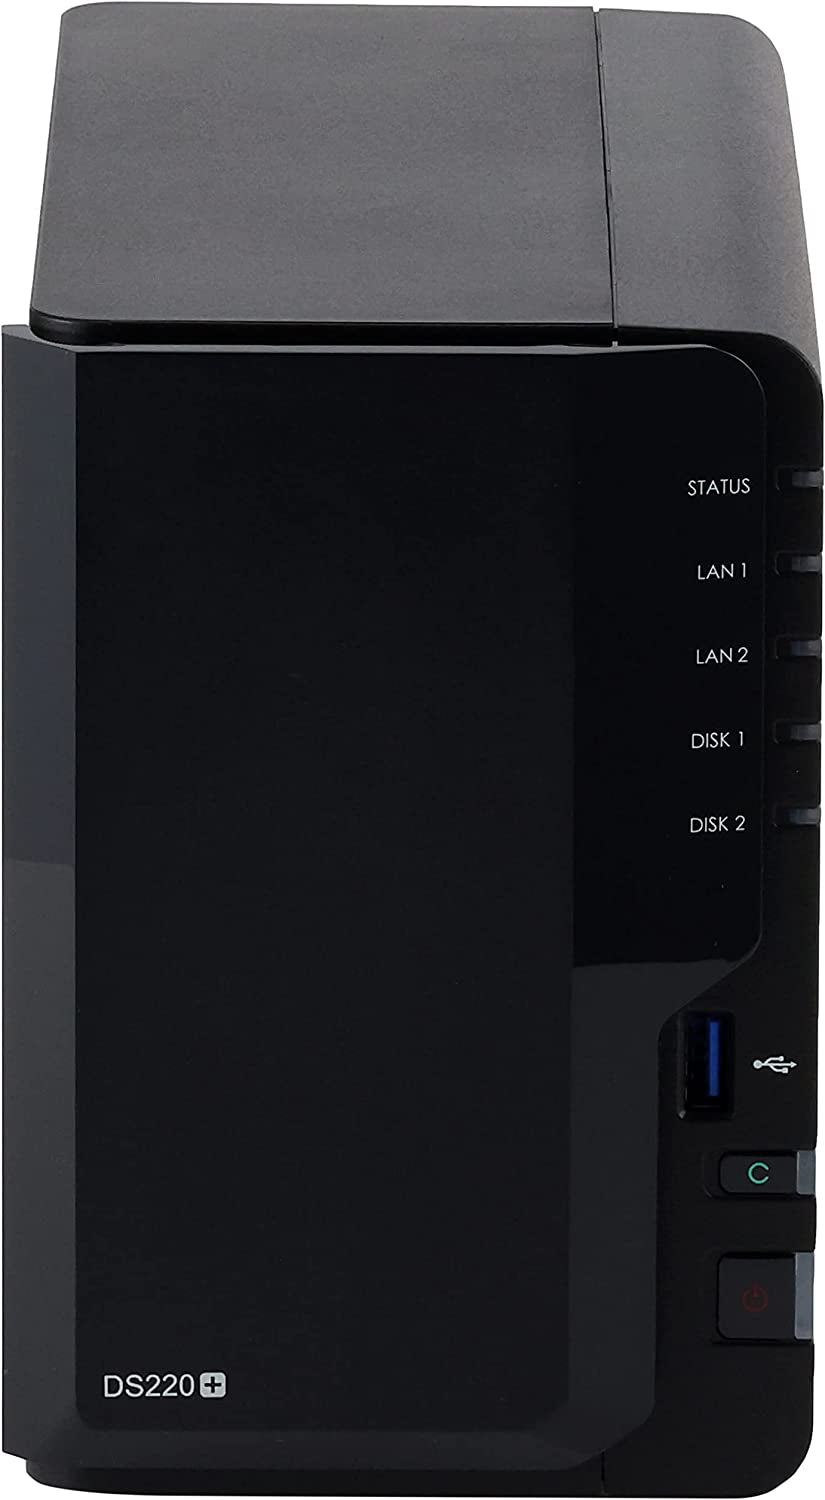 2 Bay NAS Diskstation DS220+ (Diskless),Black